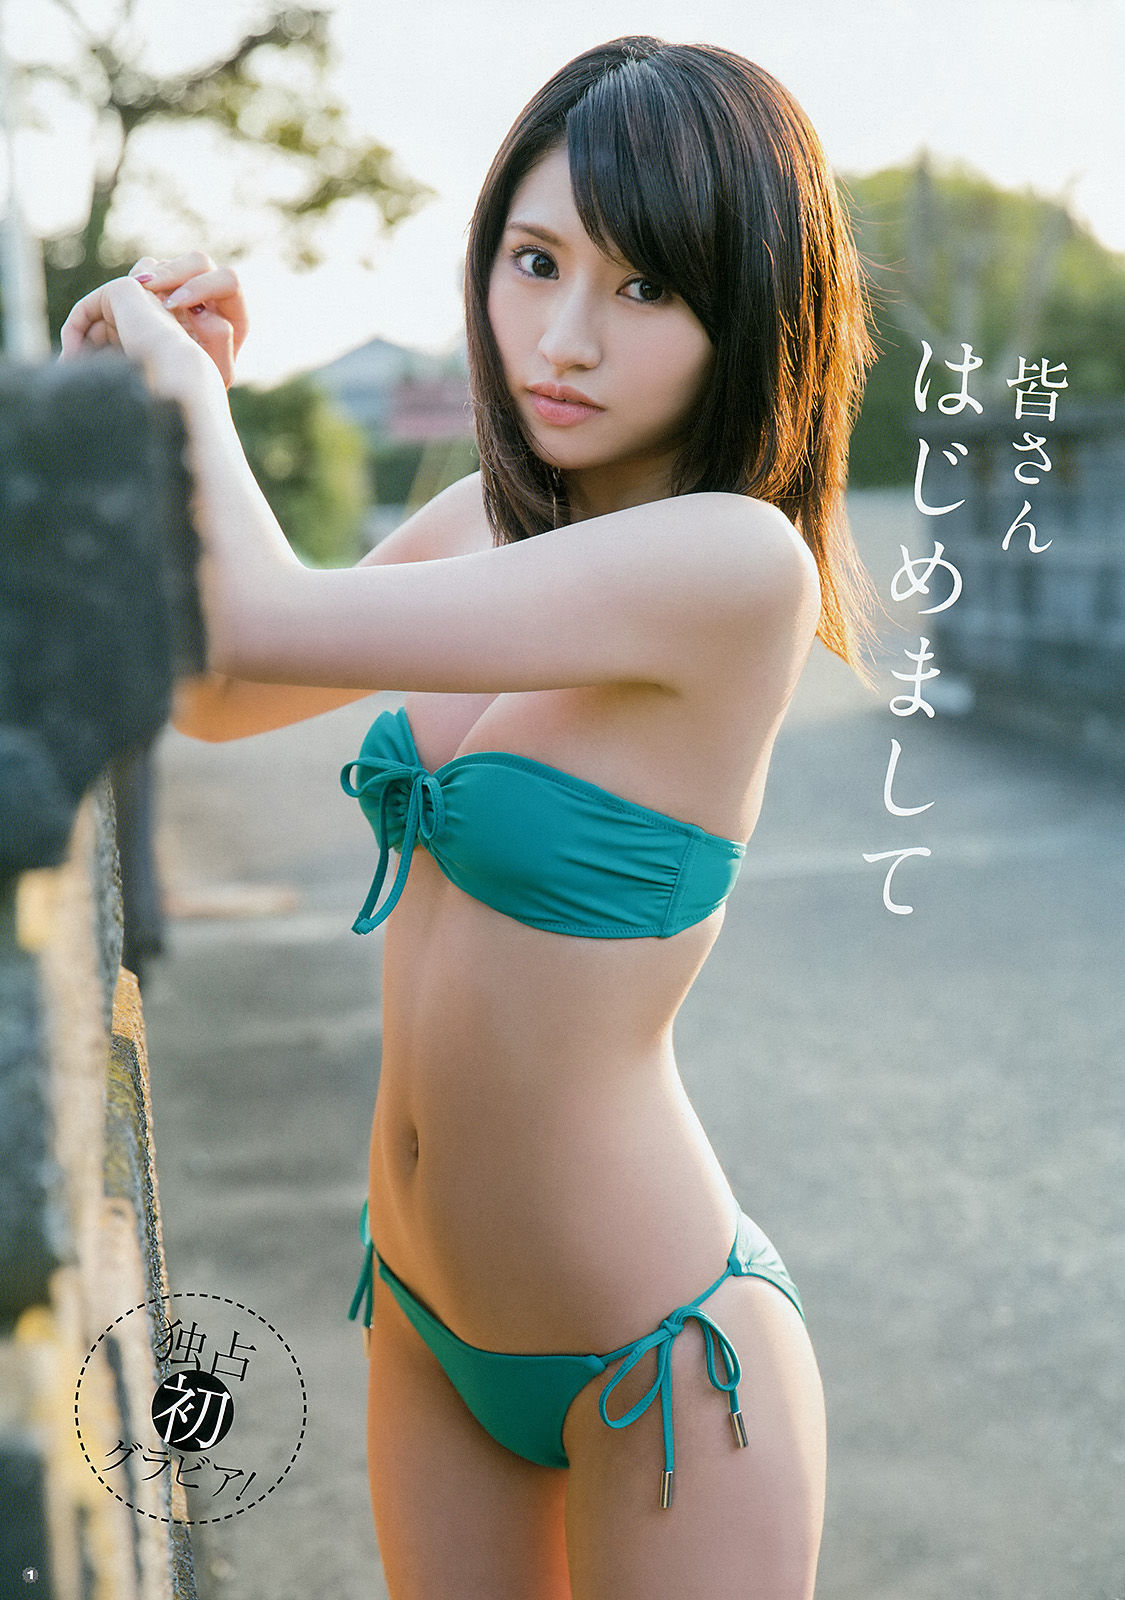 [Young Gangan] Haruka Kodama Rion 2015 No.23 Photo Magazine Page 3 No.4381f3